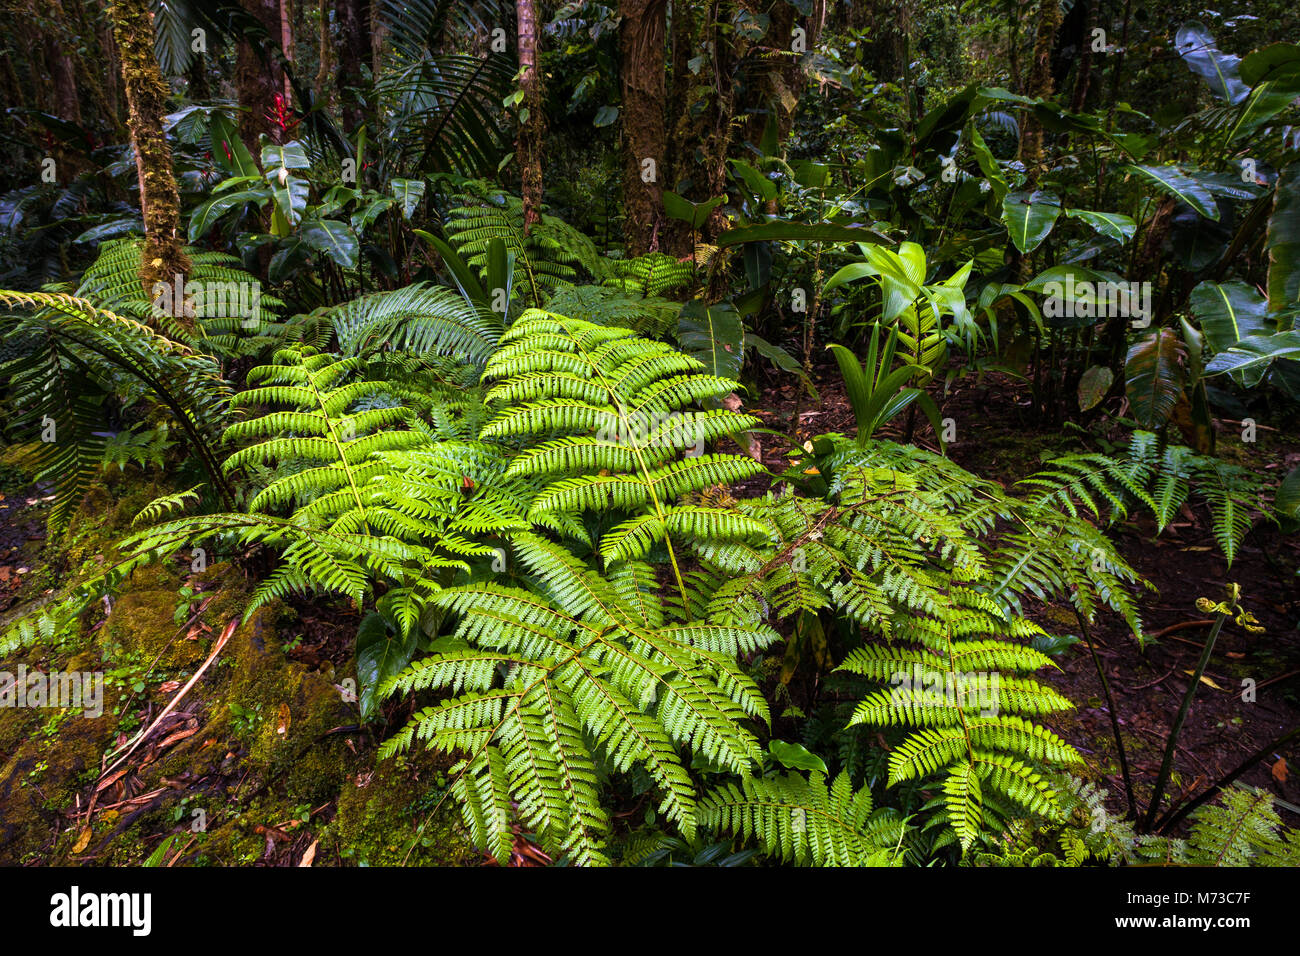 La végétation sur le sol de la forêt de nuages en parc national La Amistad, Chiriqui province, République du Panama. Banque D'Images